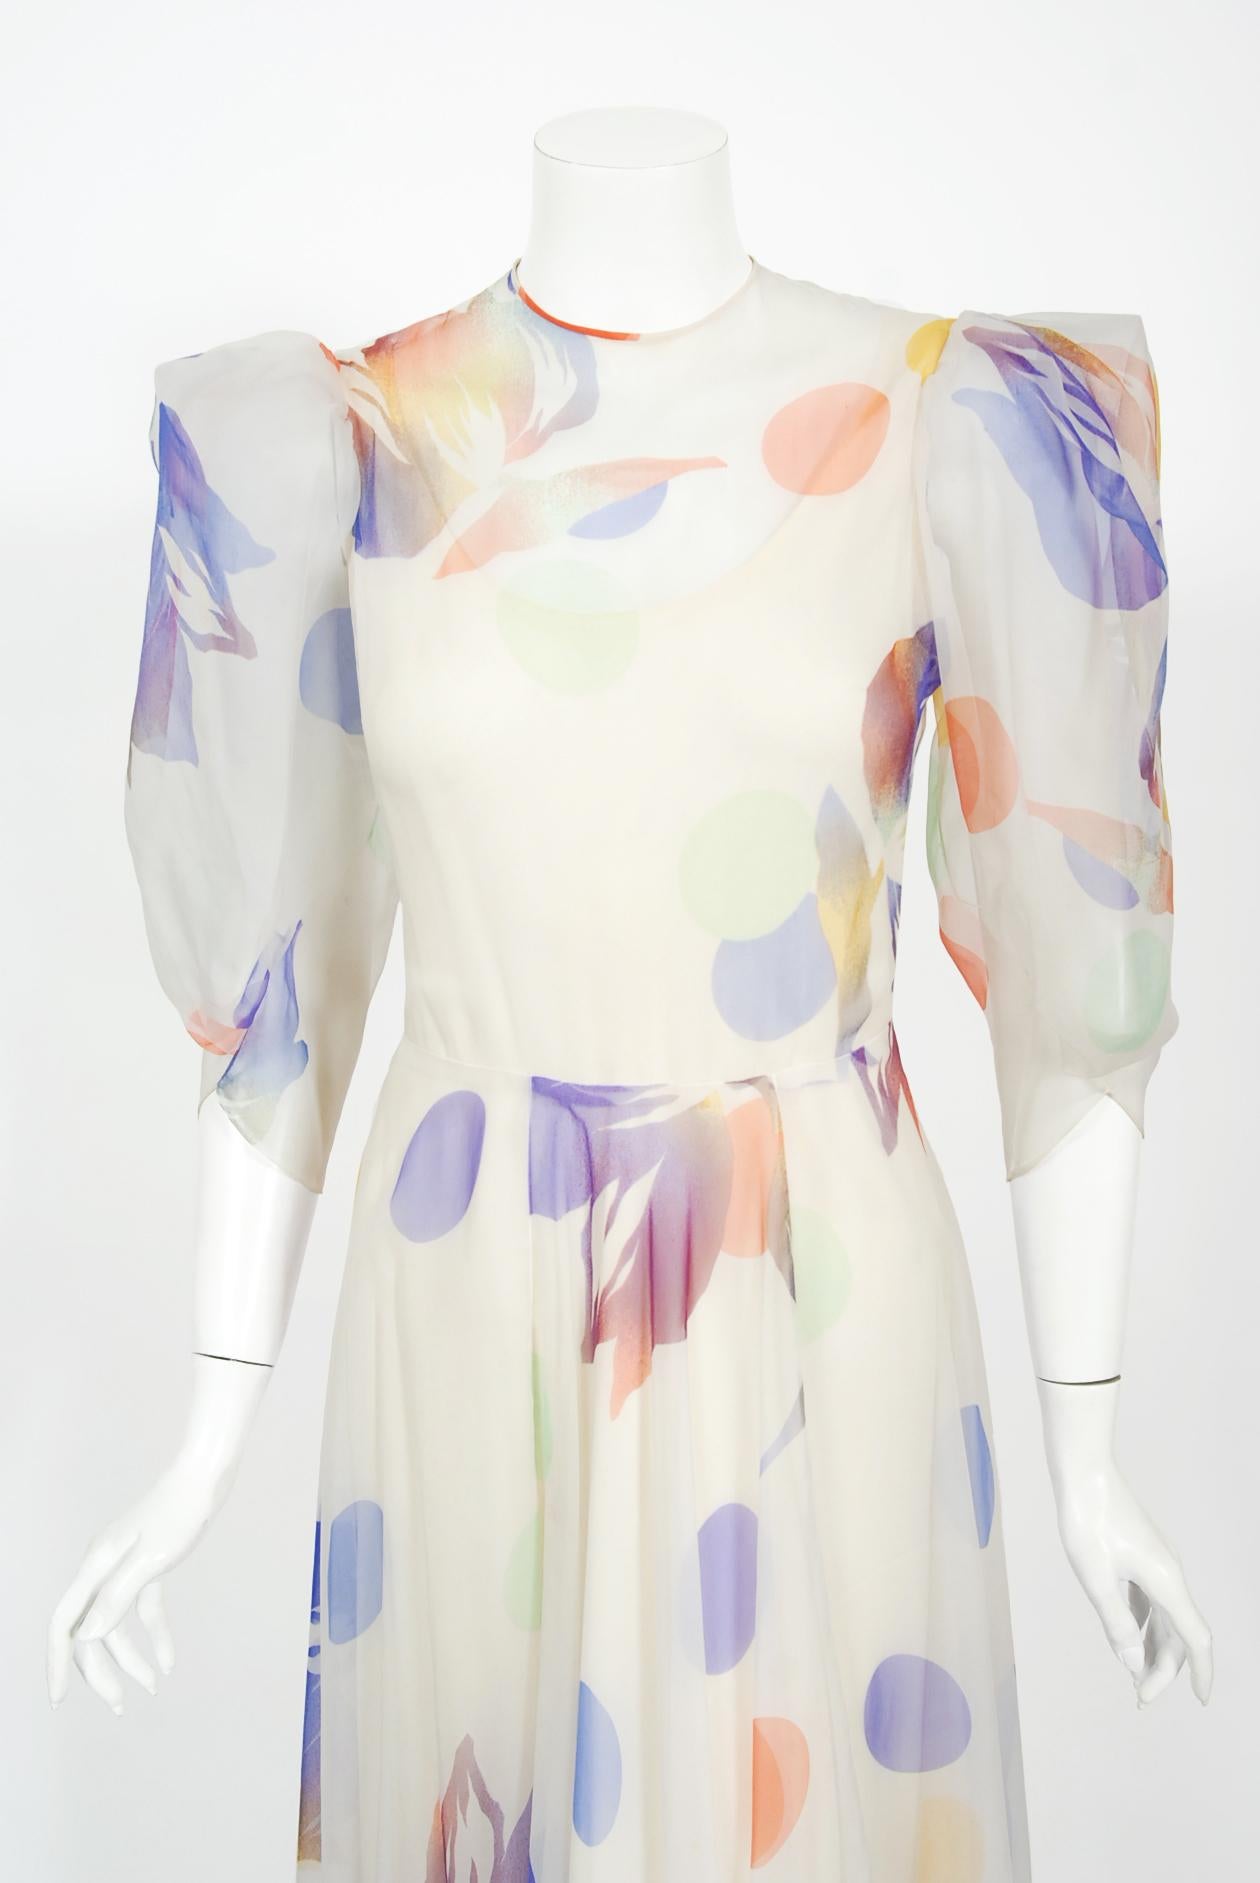 Ein zauberhaftes, mit Aquarellfarben gepunktetes Kleid aus Seidenchiffon von Stavropoulos Couture aus den späten 1970er Jahren mit Blumenmuster. George Stavropoulos war ein New Yorker Modedesigner, der für seine innovativ drapierten Kleider und